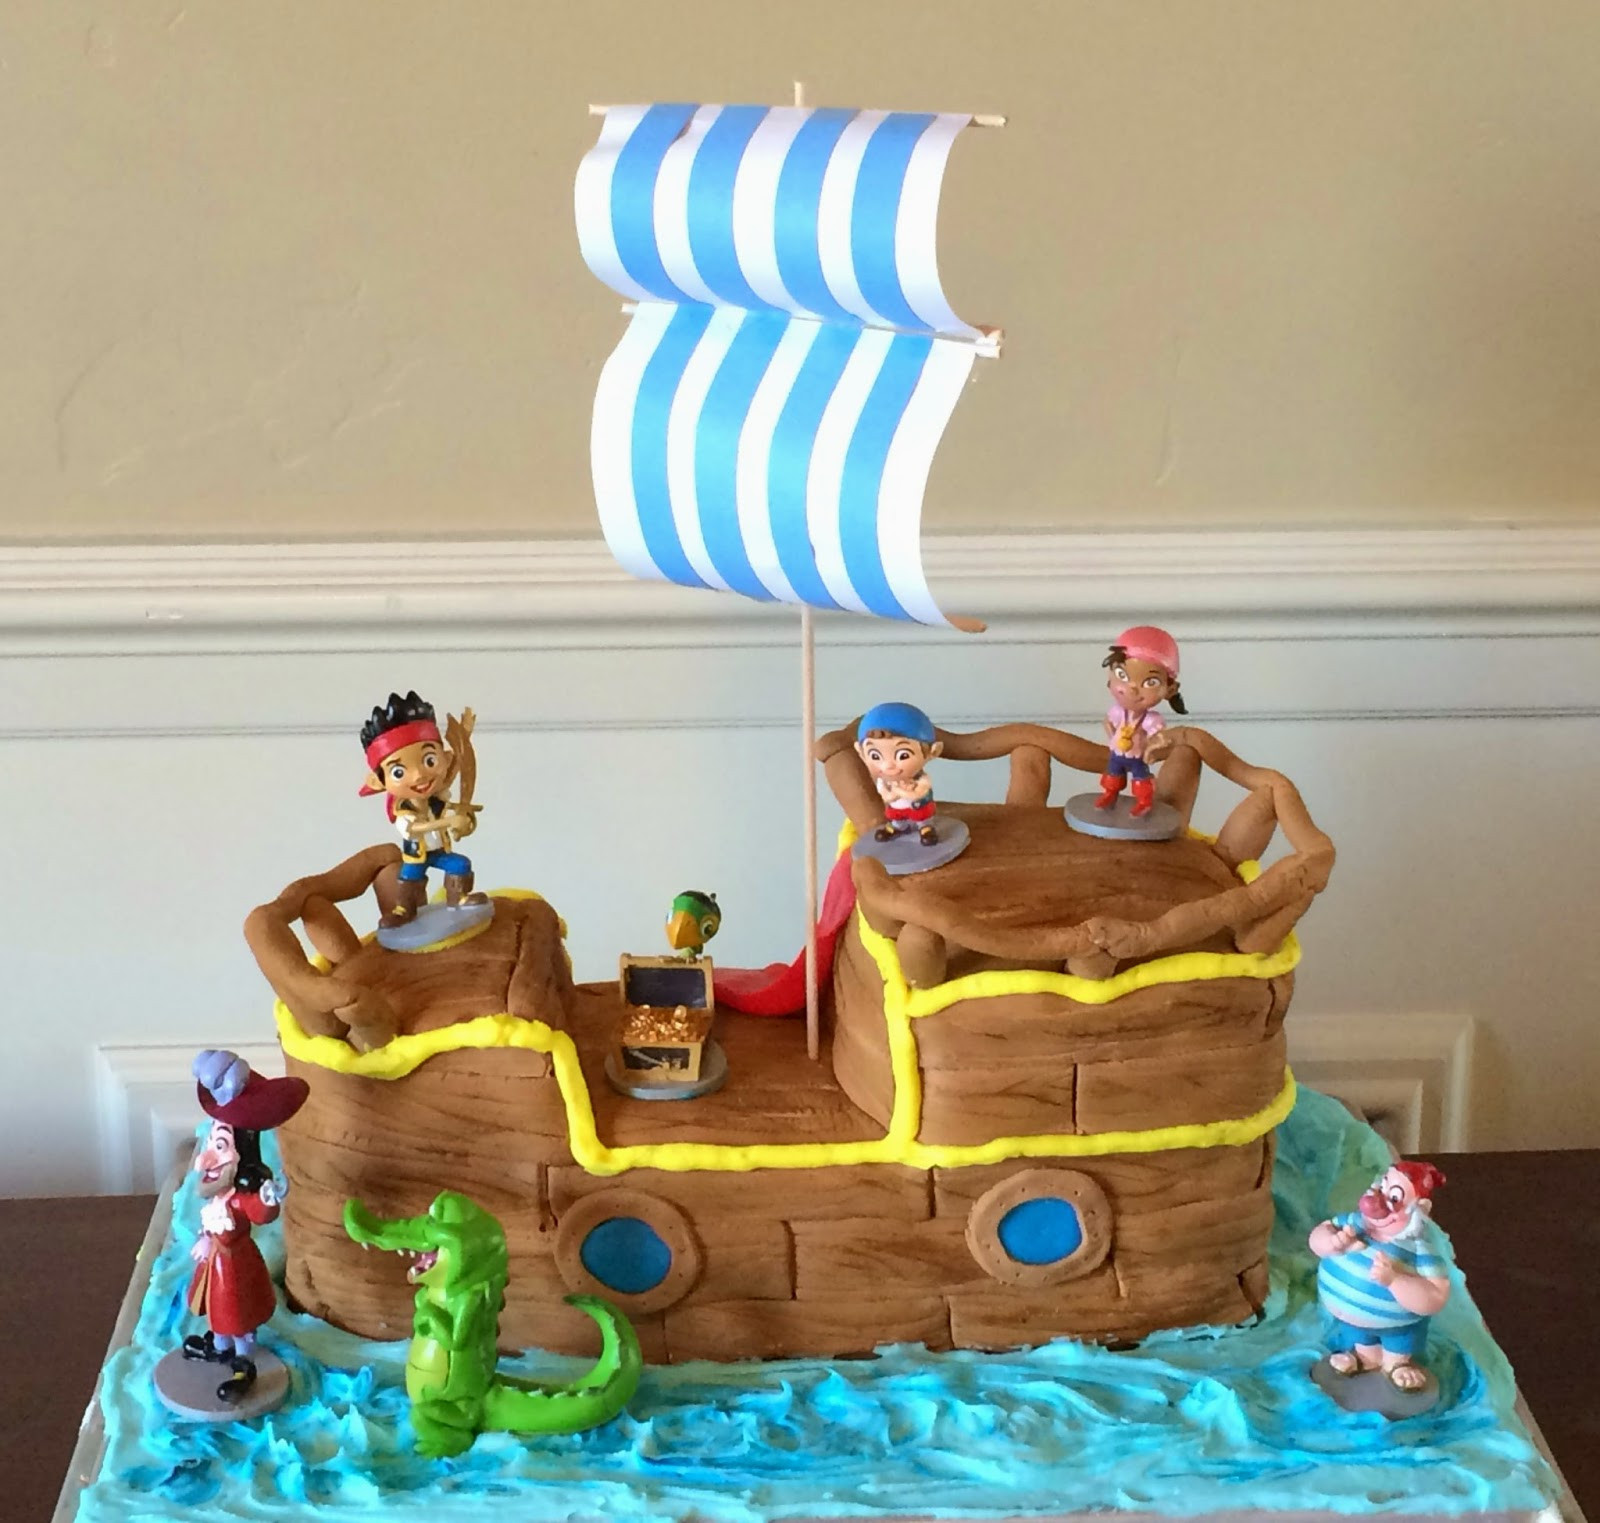 Jake And The Neverland Pirates Birthday Cake
 Planning Playtime Jake and the Neverland Pirates Birthday